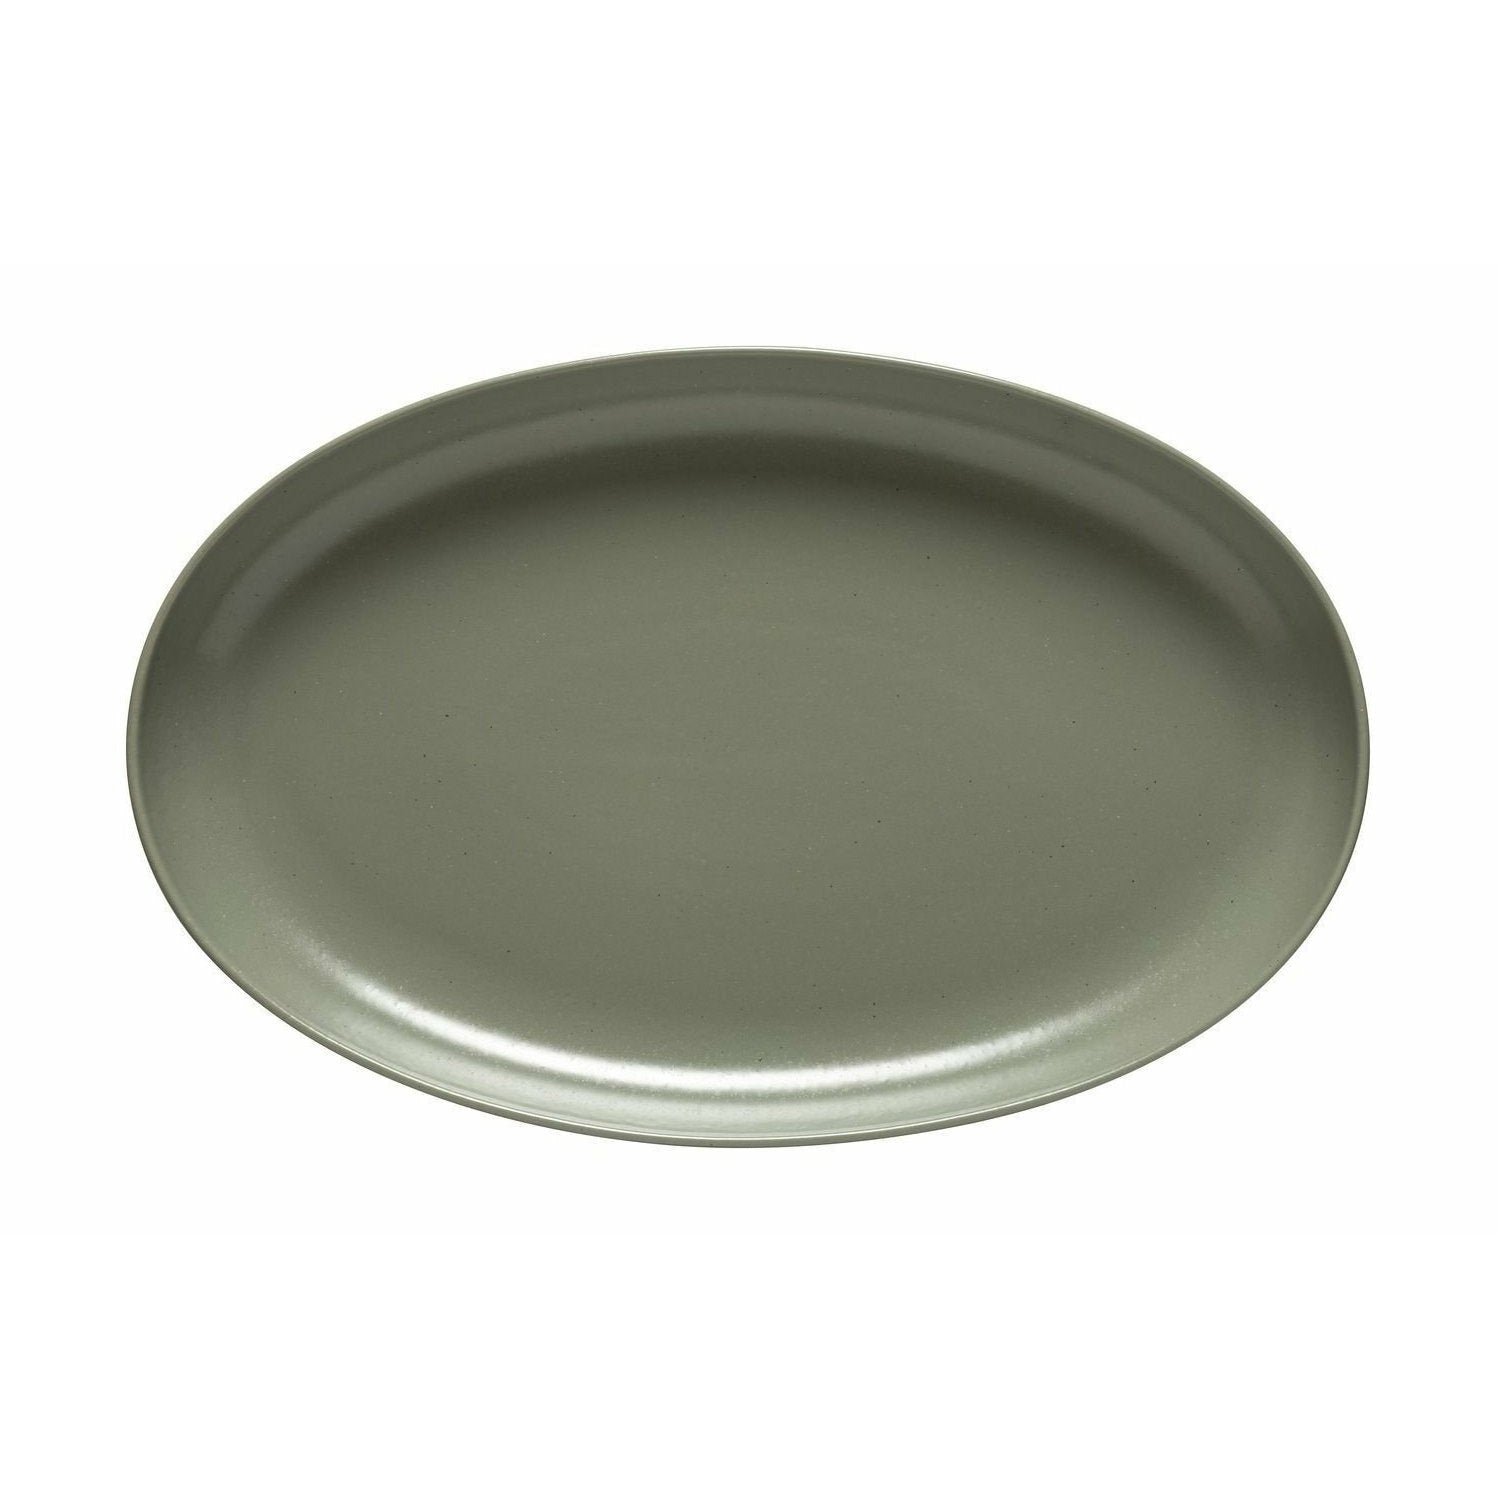 Casafina Oval serveringsrätt, grön